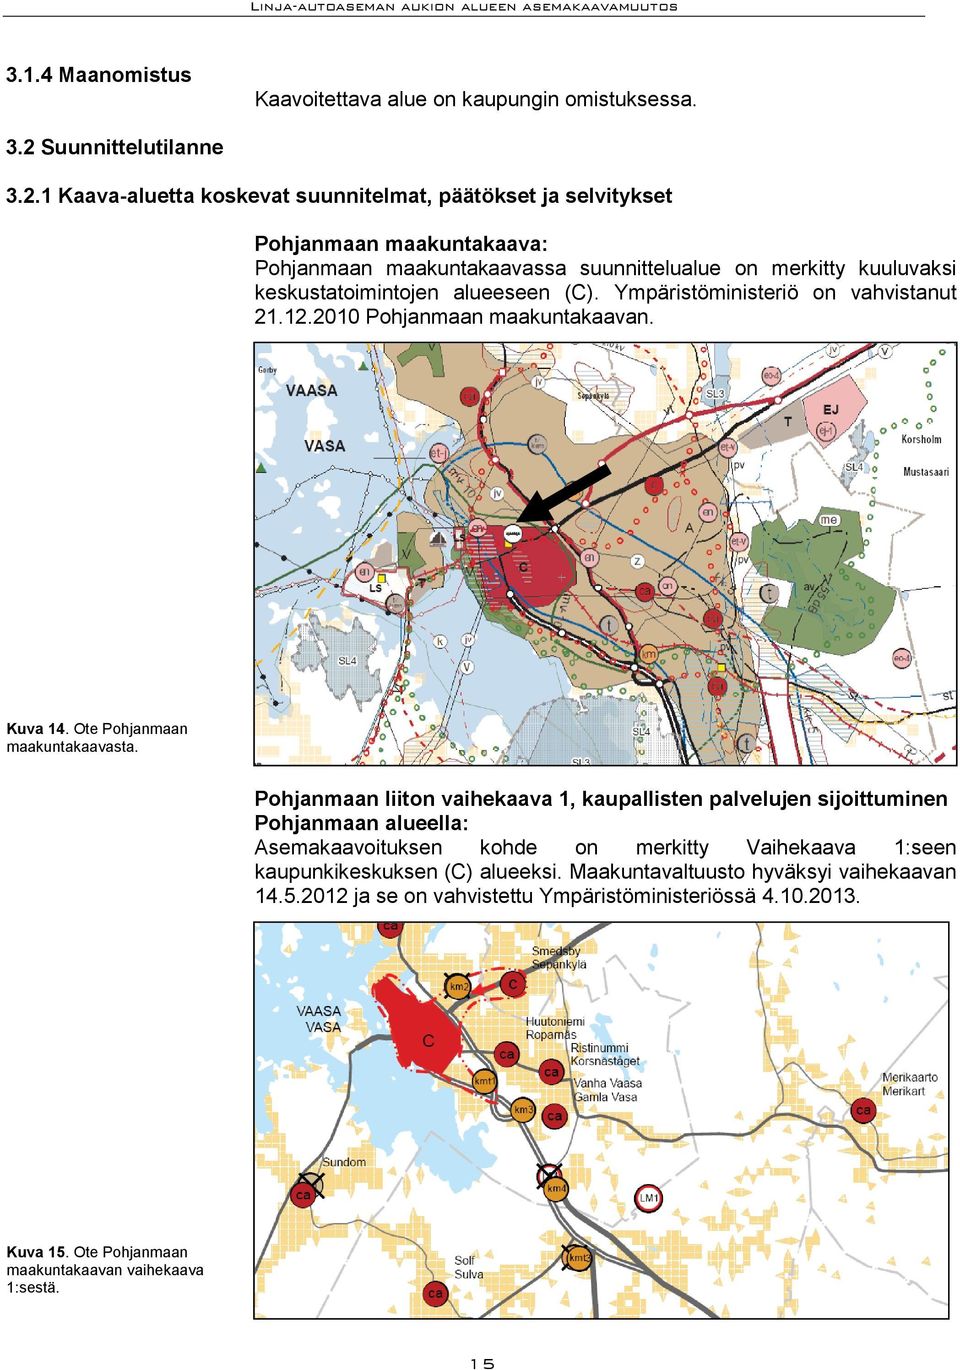 1 Kaava-aluetta koskevat suunnitelmat, päätökset ja selvitykset Pohjanmaan maakuntakaava: Pohjanmaan maakuntakaavassa suunnittelualue on merkitty kuuluvaksi keskustatoimintojen